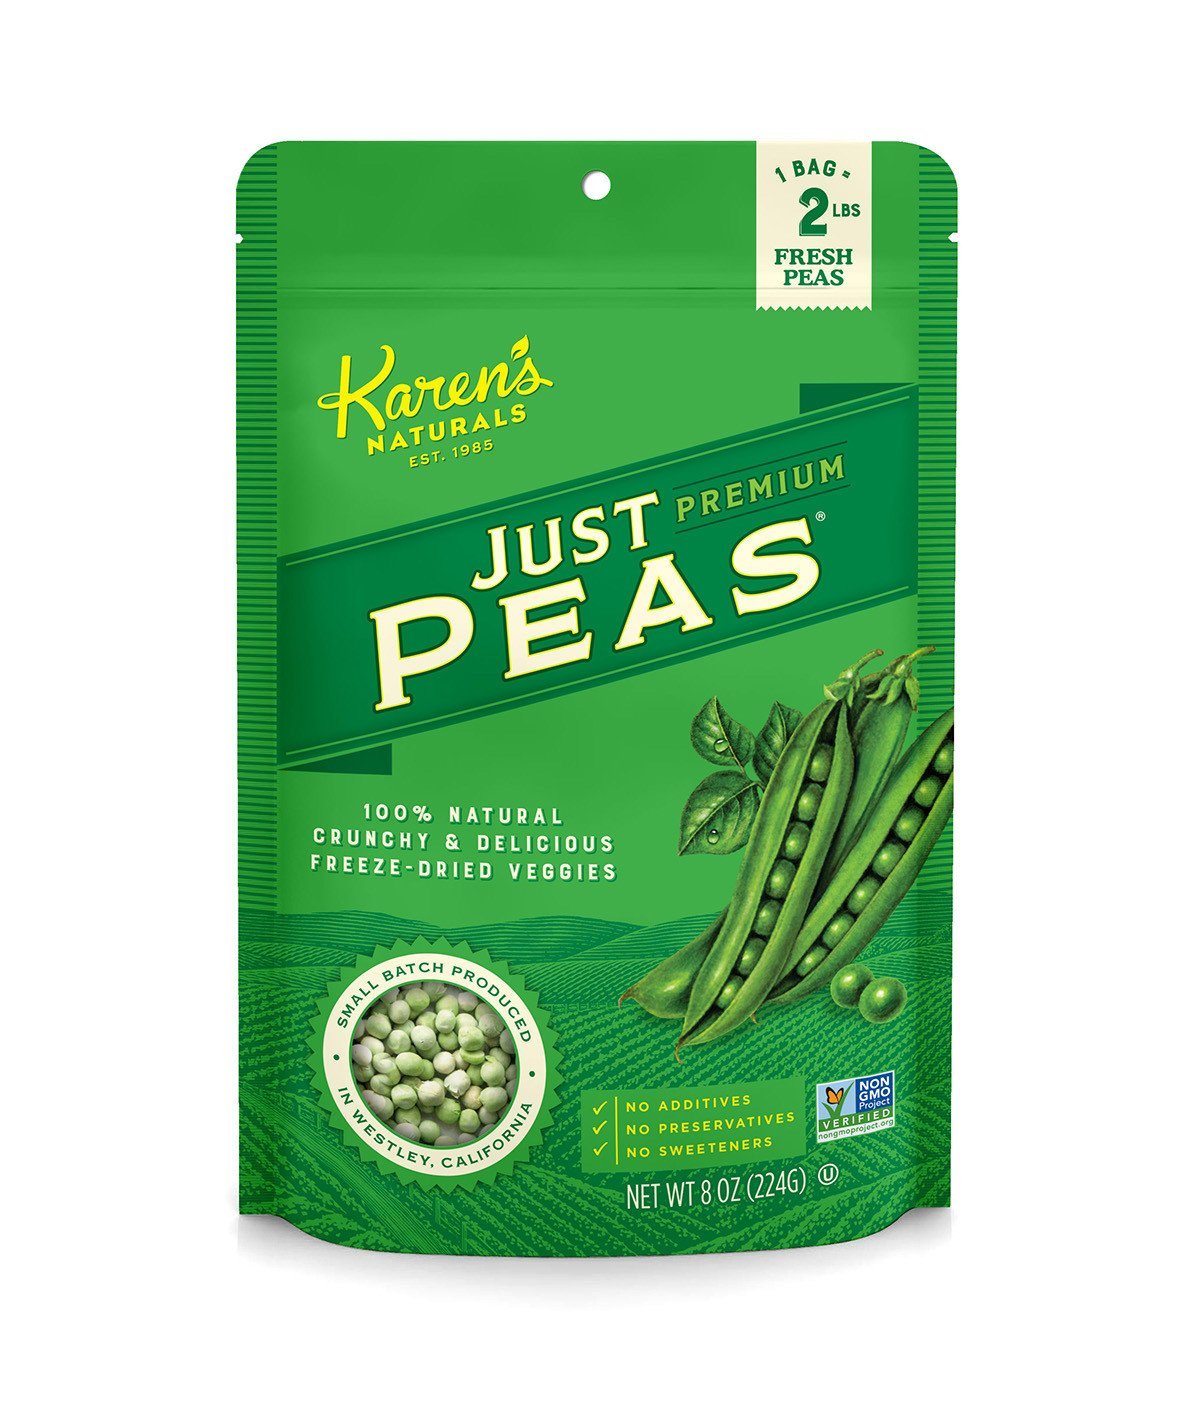 Just Peas - Karen's Naturals